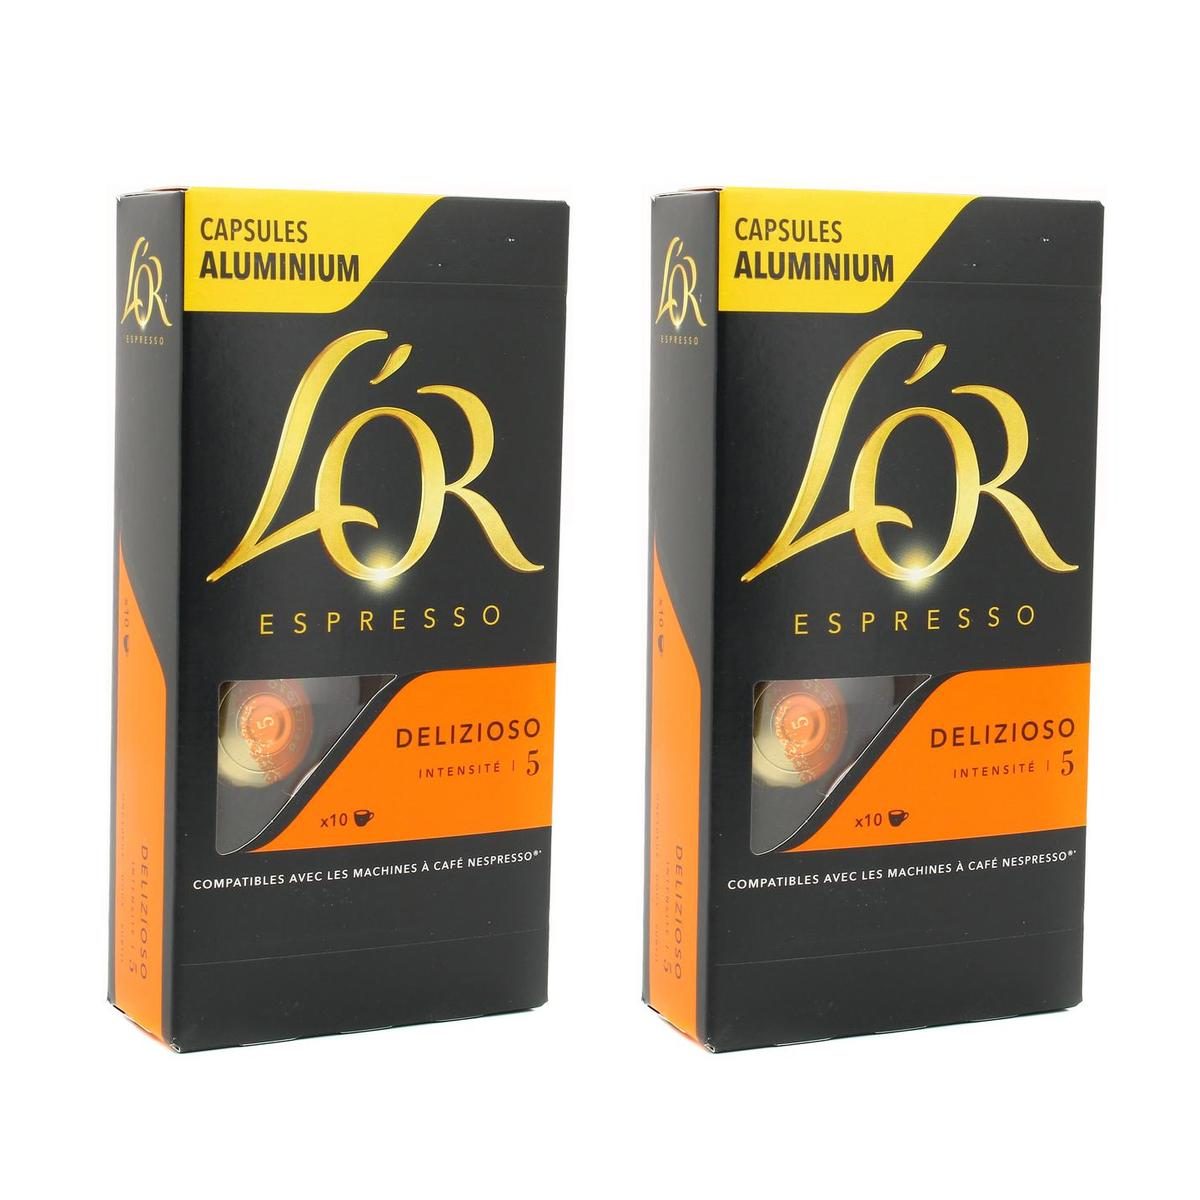 Espresso Delizioso 5 - L'Or - 52 g 10 capsules